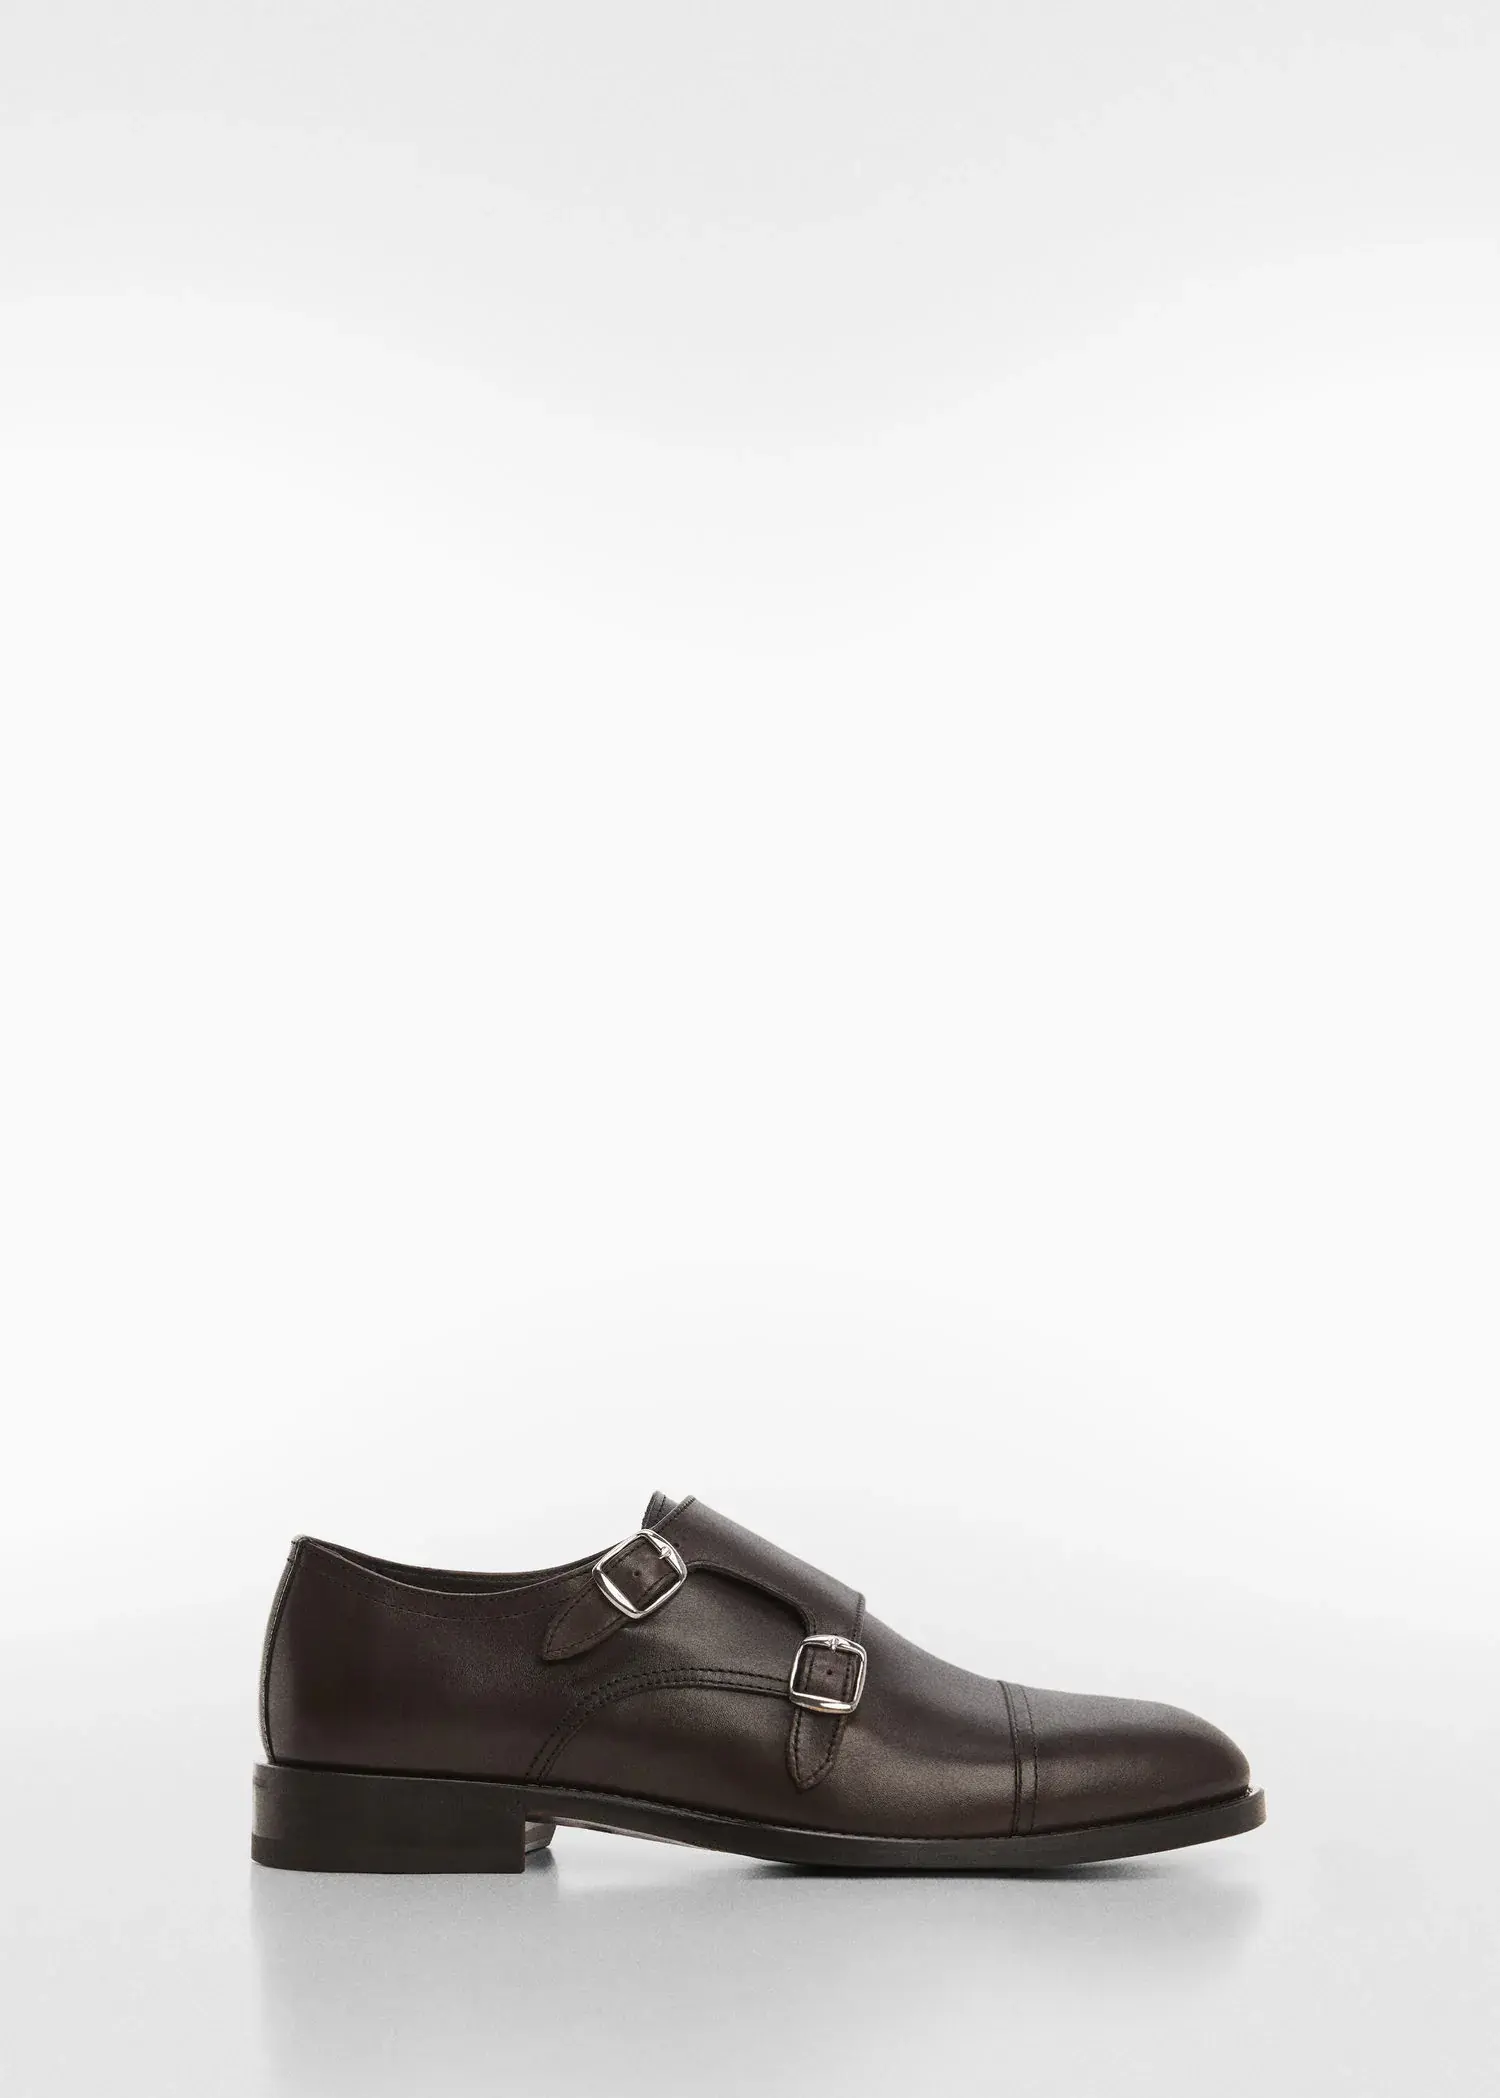 Mango Leather suit shoes. 1